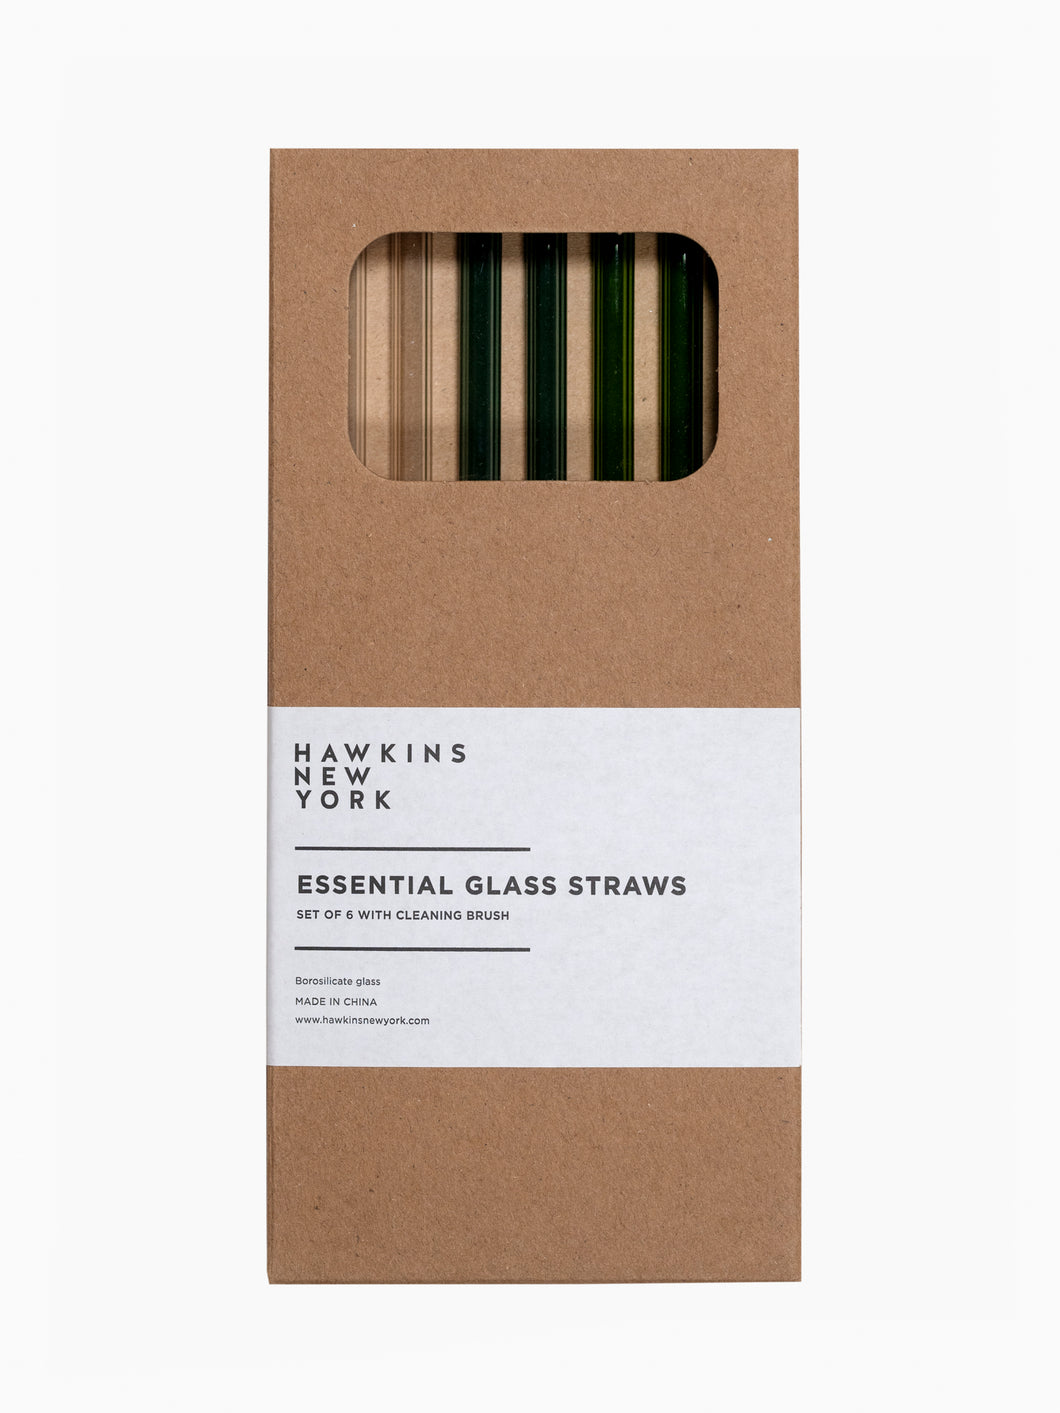 Essential Glass Straws, 3 Color Sets